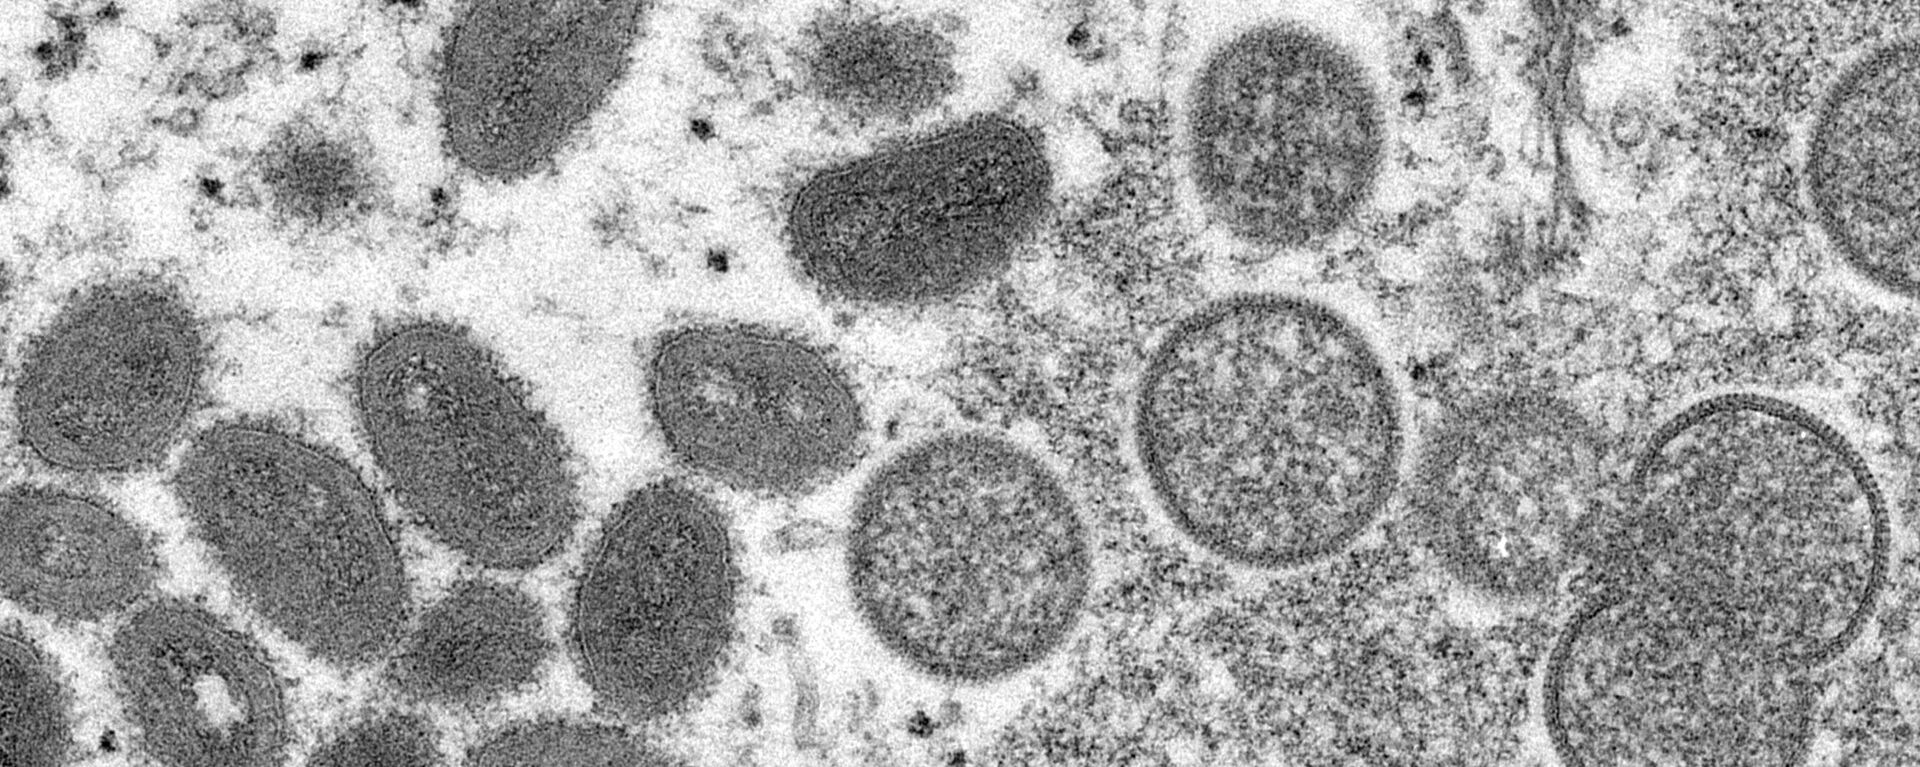 Vírions de varíola dos macacos, maduros e ovais (à esquerda), e vírions imaturos, esféricos (à direita), obtidos de amostra de pele humana associada ao surto de cães da pradaria de 2003 - Sputnik Brasil, 1920, 29.07.2022